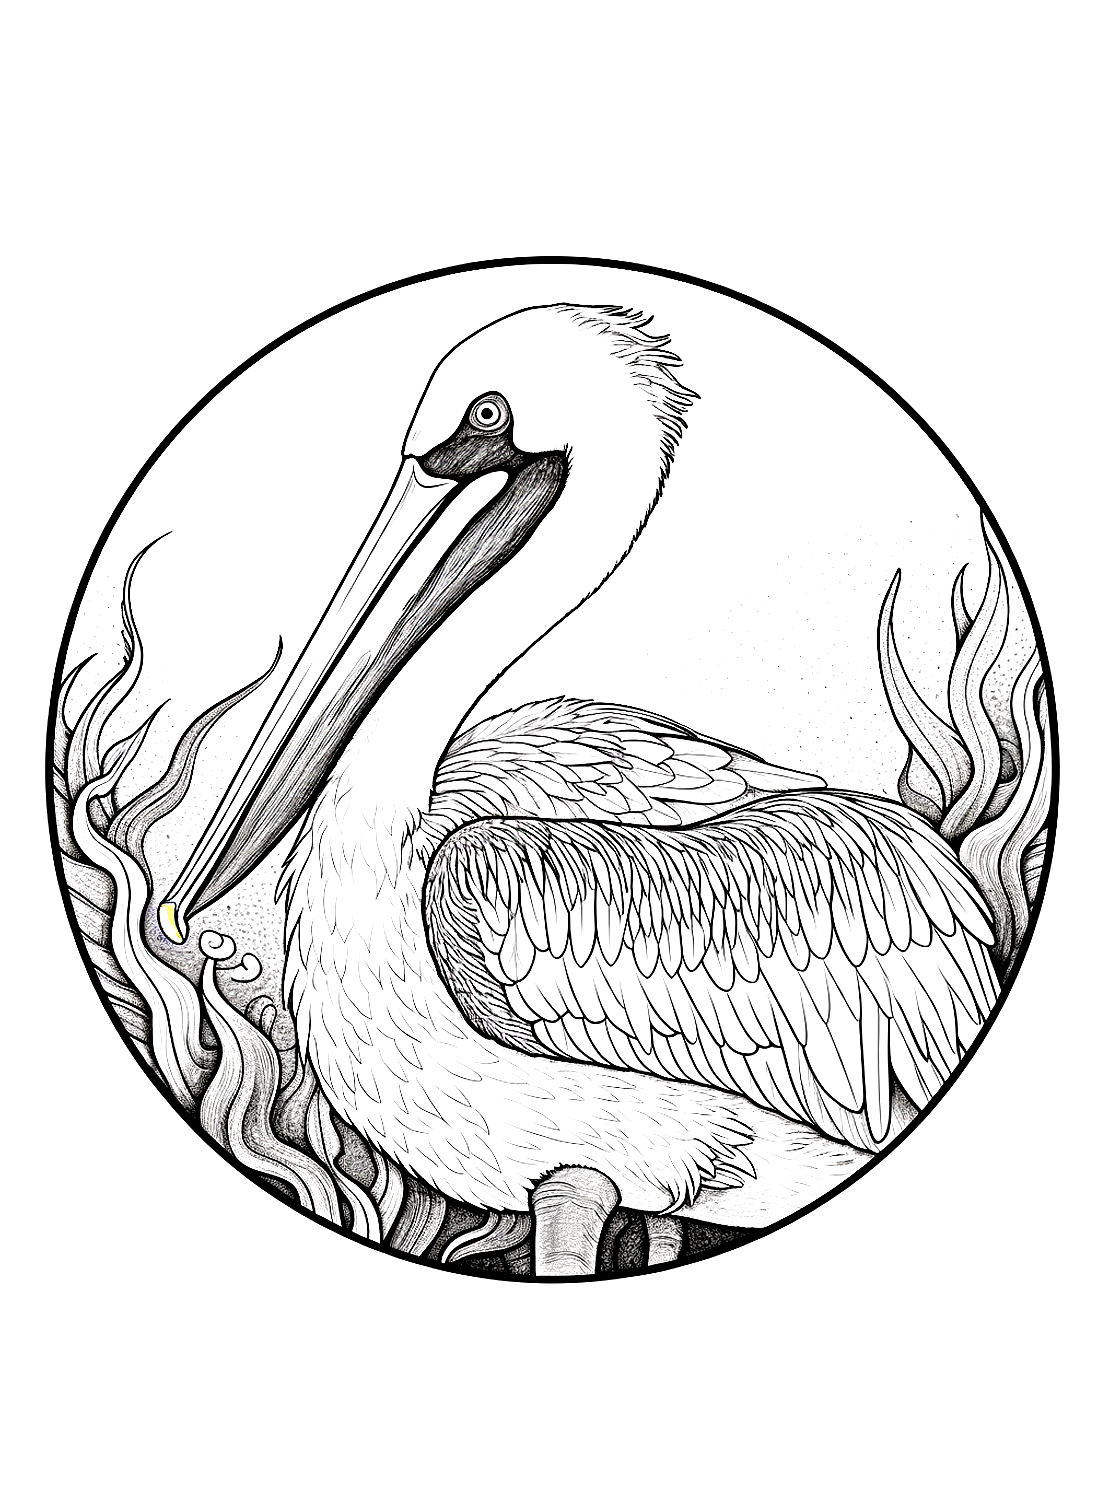 El artista Pelican de Pelican.